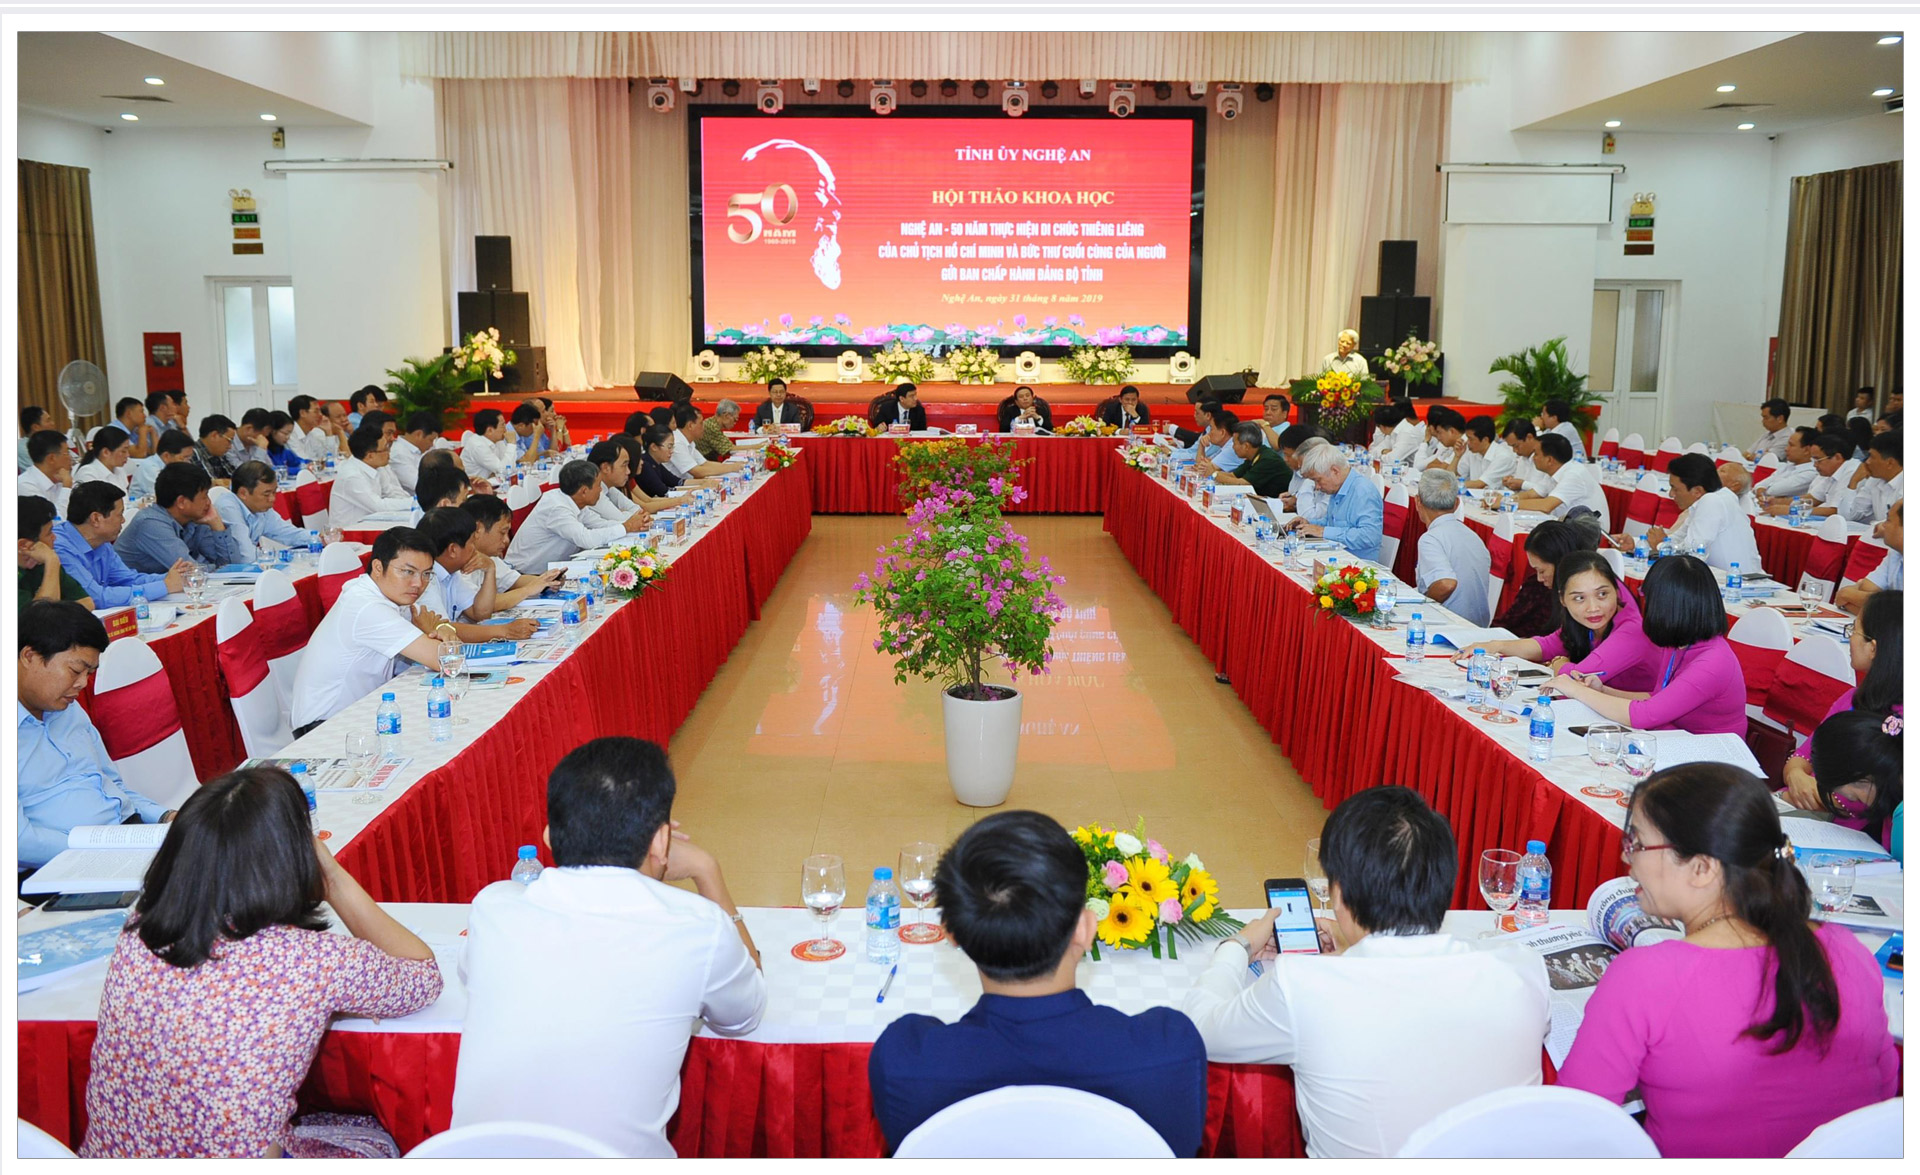 Hội thảo khoa học Nghệ An - 50 năm thực hiện Di chúc thiêng liêng của Chủ tịch Hồ Chí Minh và Bức thư cuối cùng của Người gửi Ban Chấp hành Đảng bộ tỉnh. Ảnh: Thành Cường